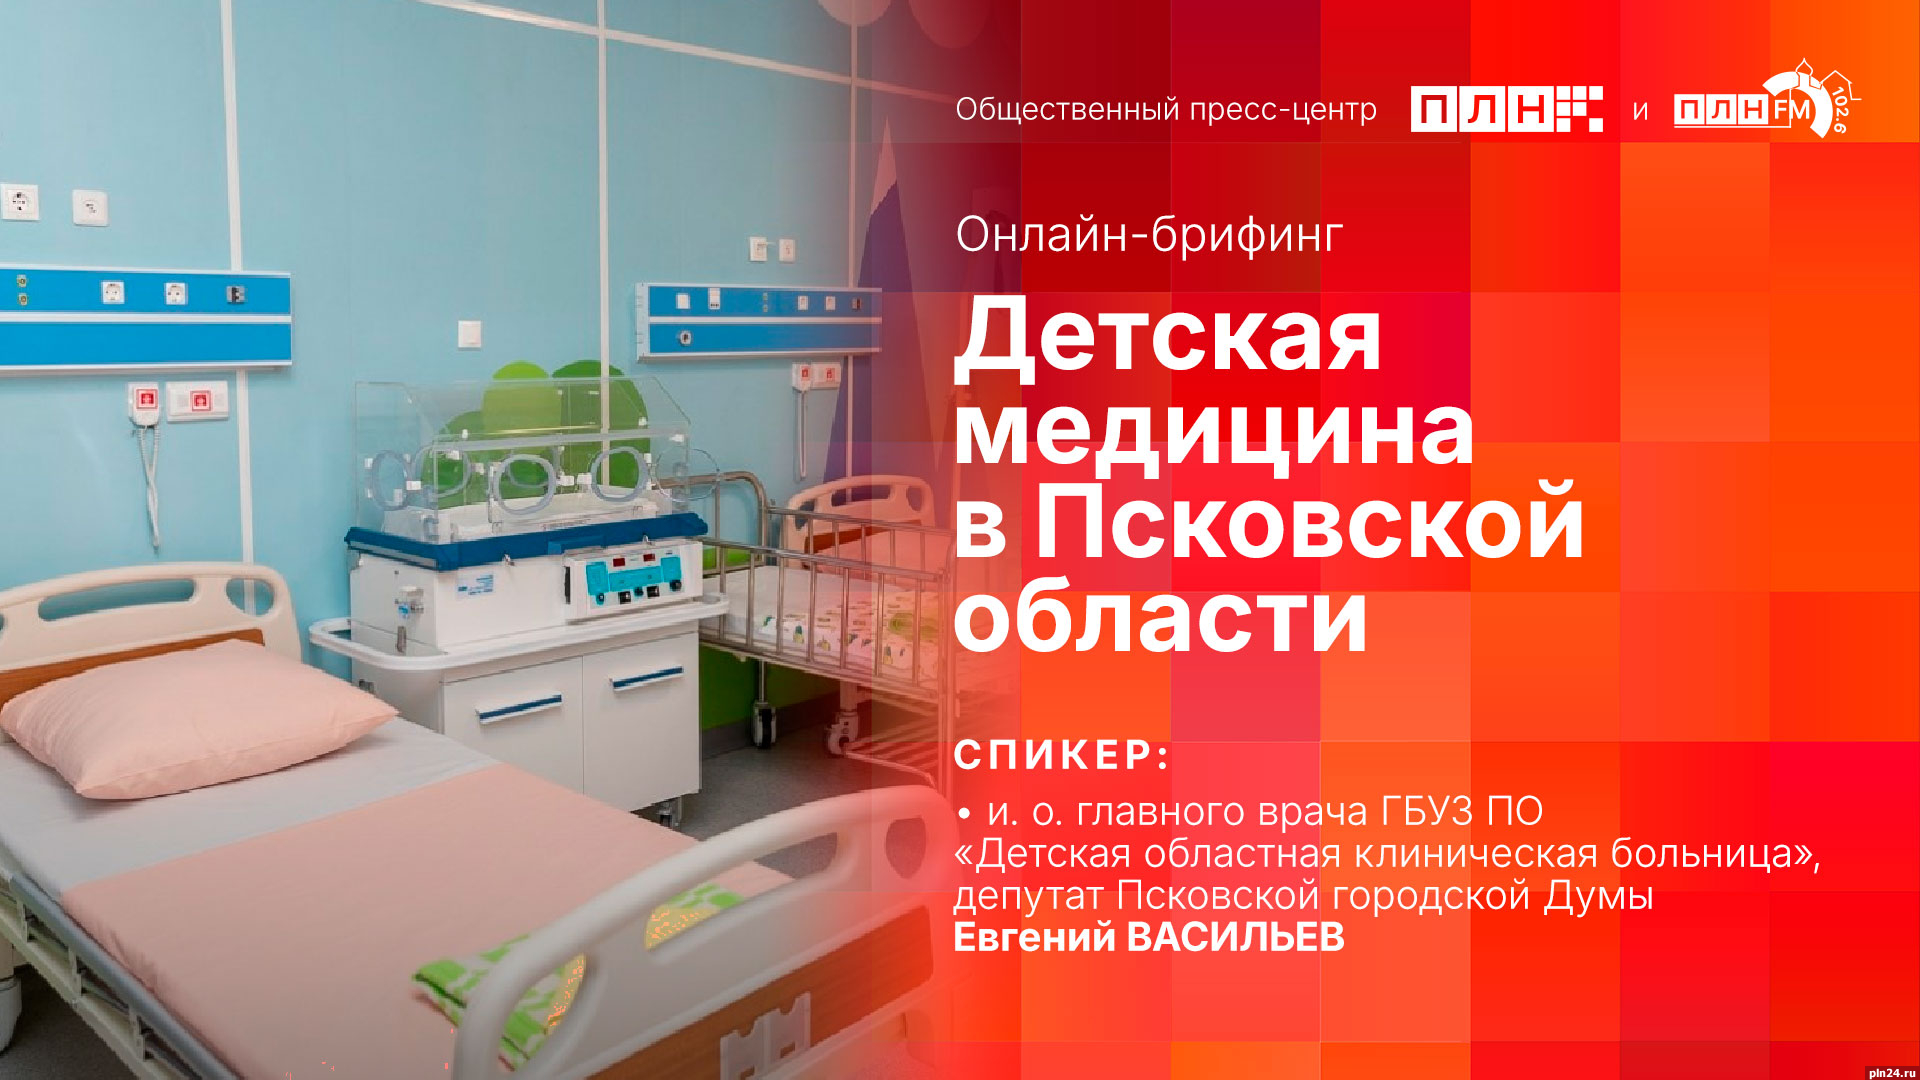 Начинается видеотрансляция онлайн-брифинга о положении дел в сфере детской медицины в Псковской области